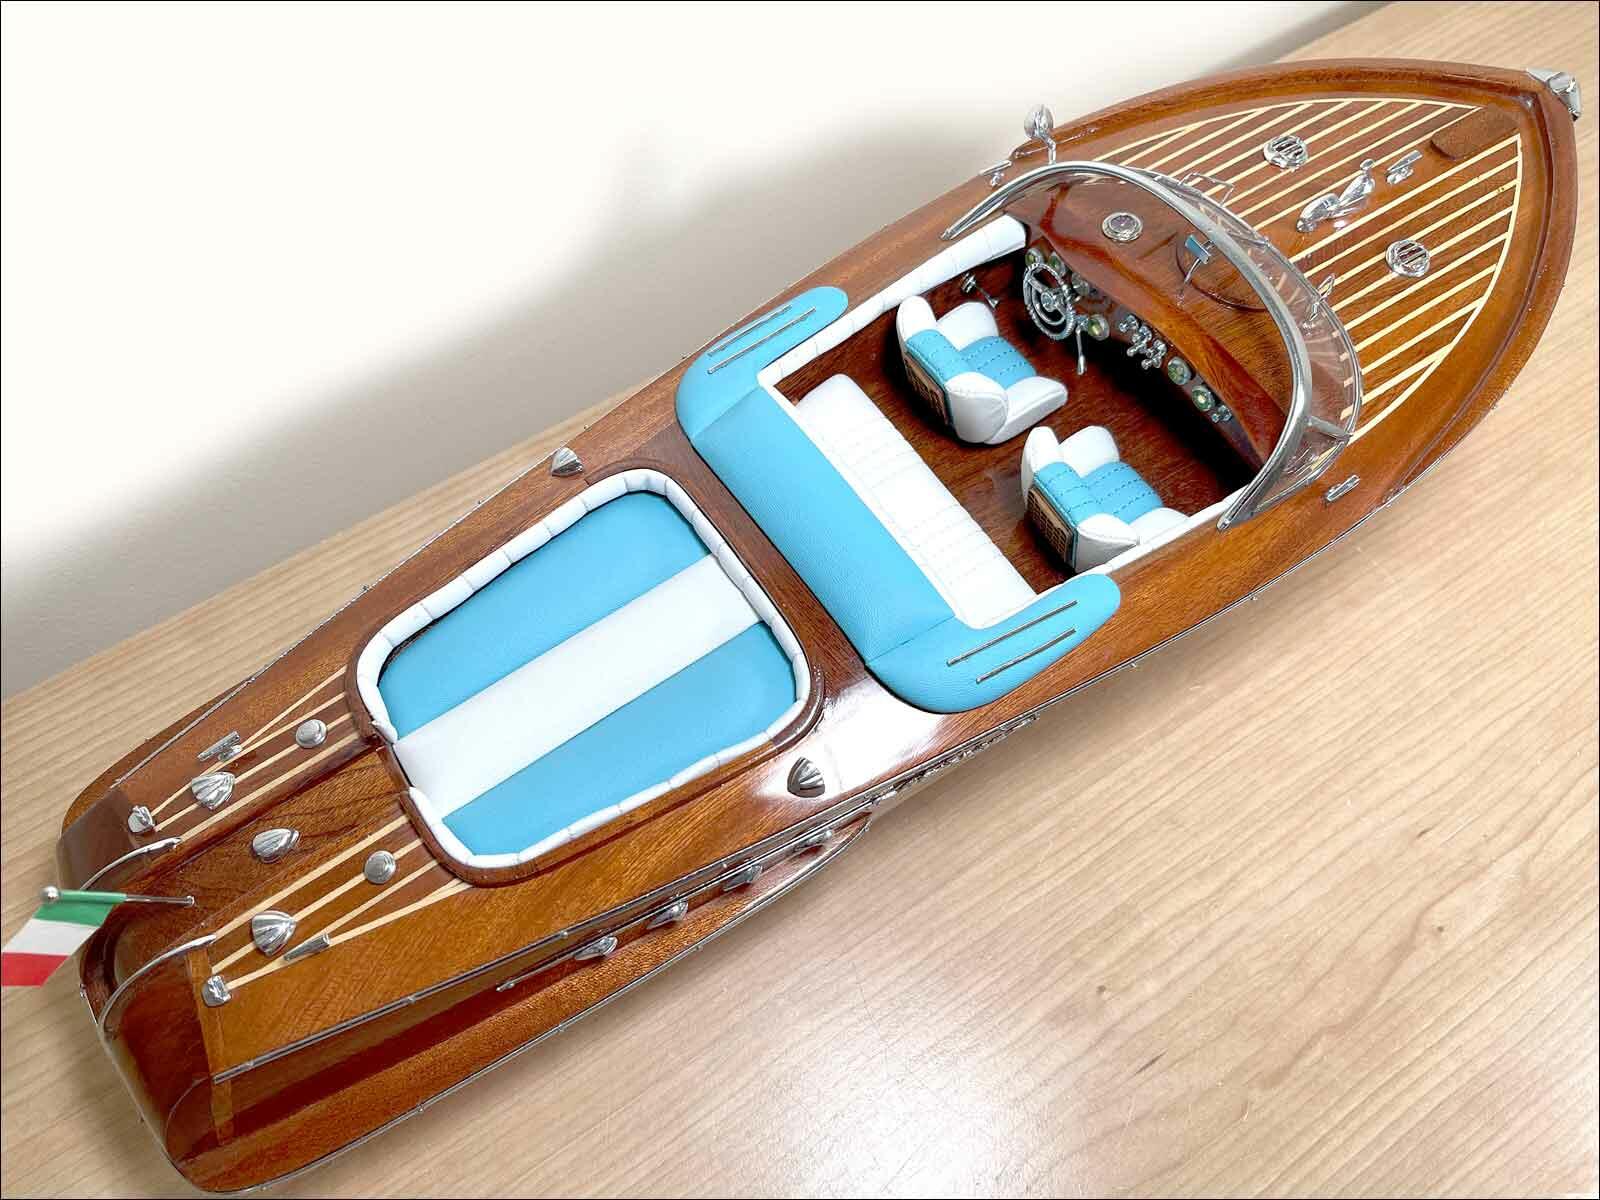 aquarama riva model boats